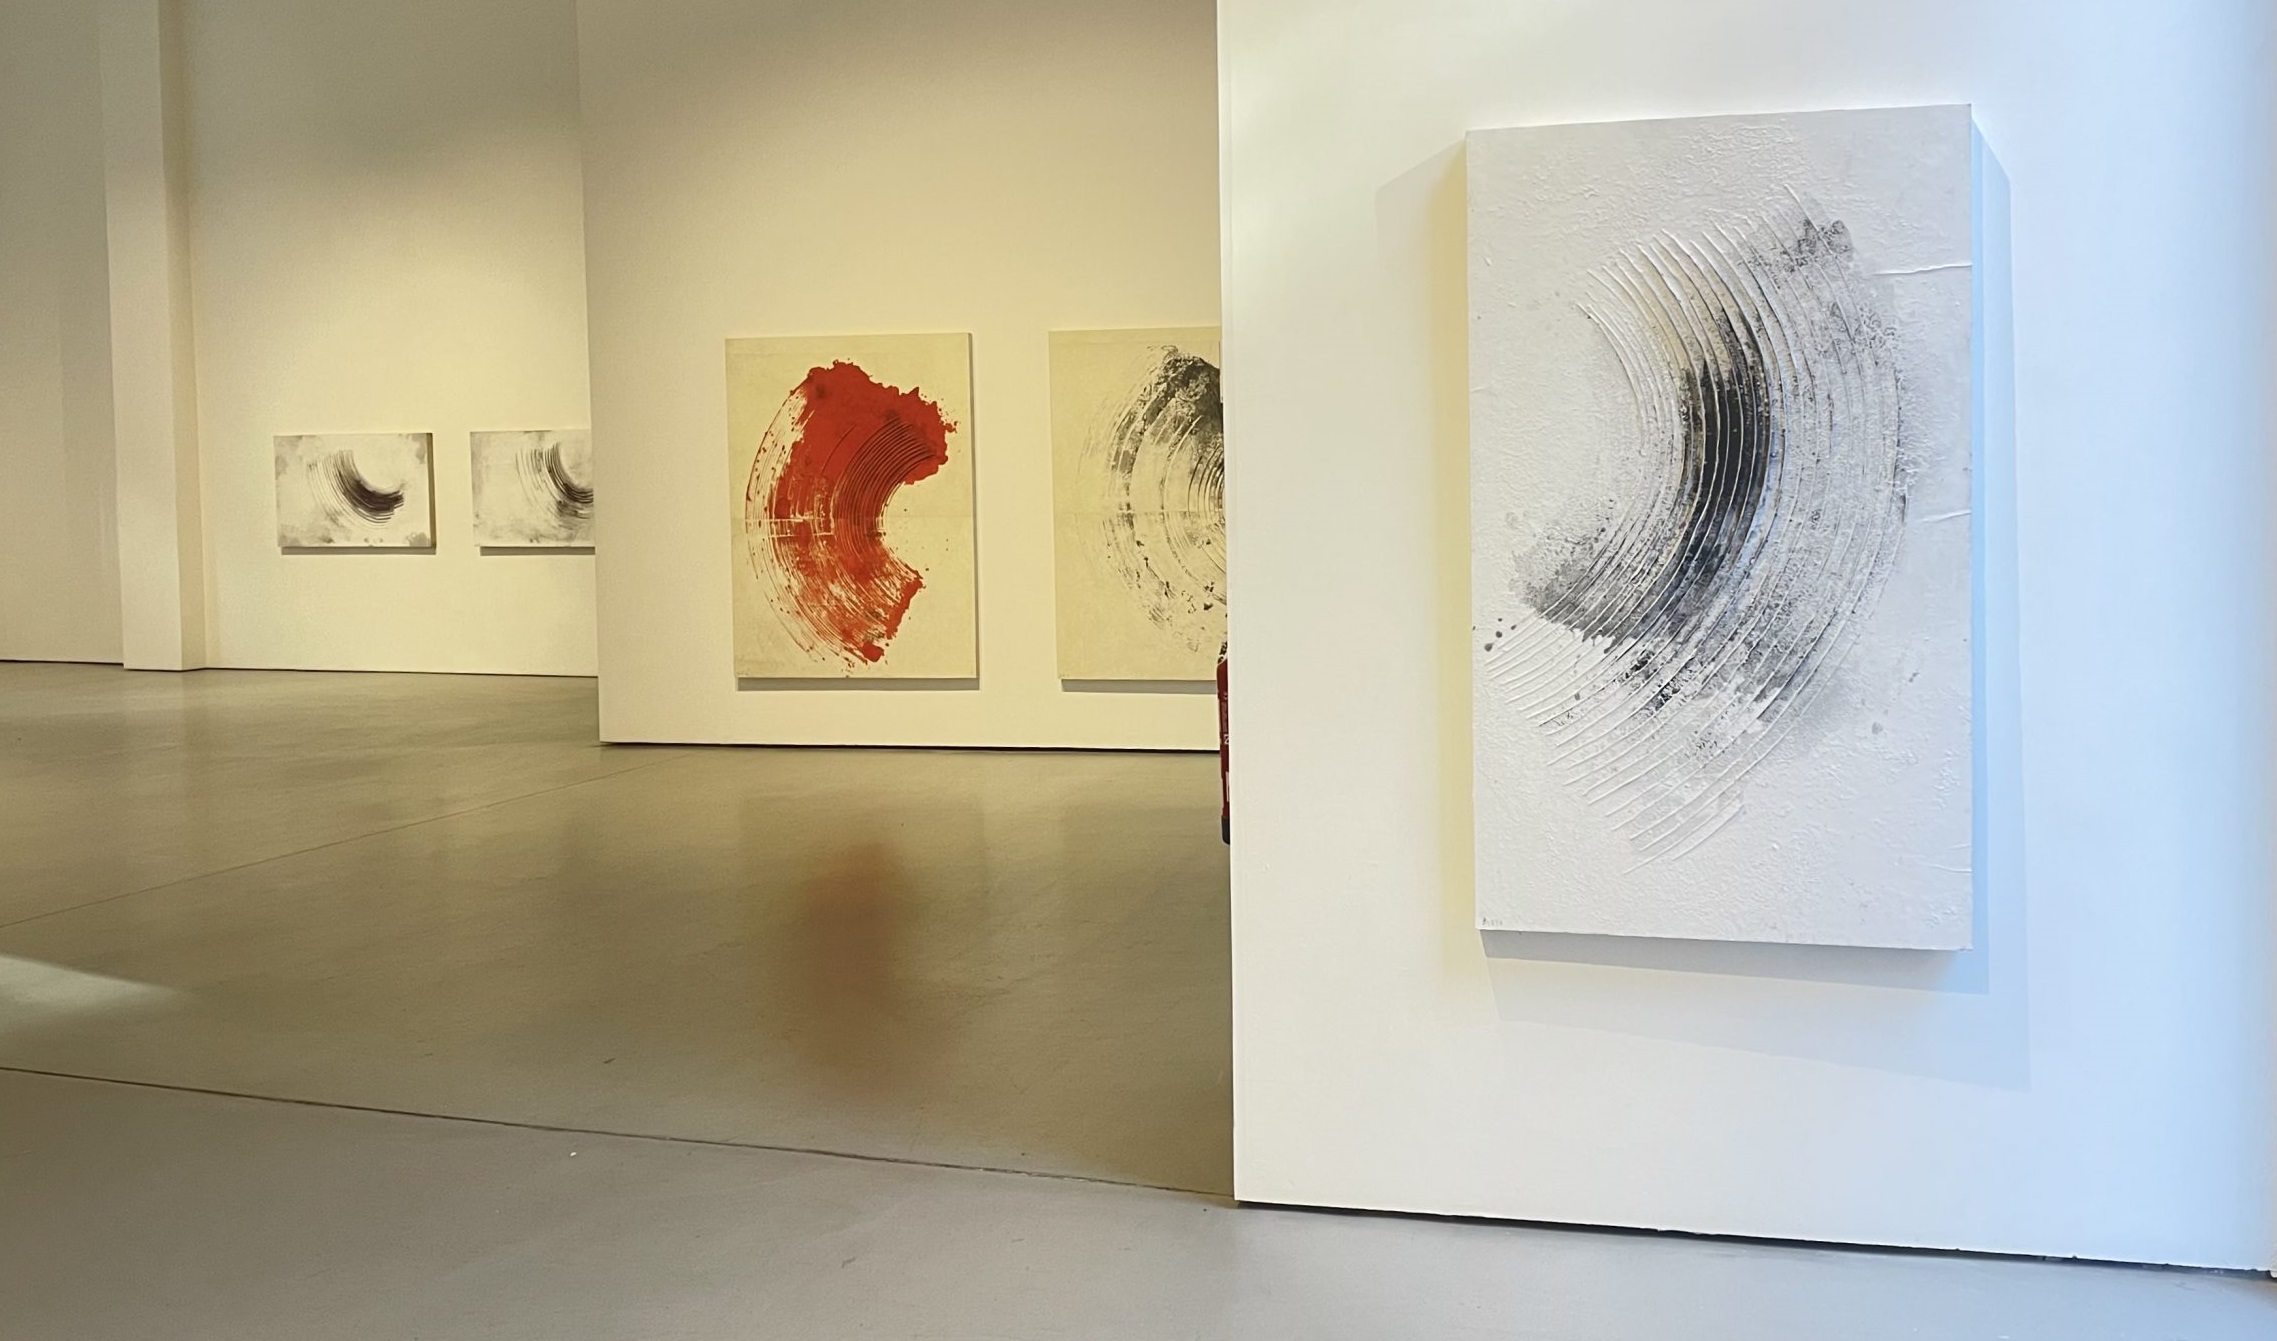 Guillem Nadal presenta una exposición de obra reciente en la Galería Álvaro Alcázar.